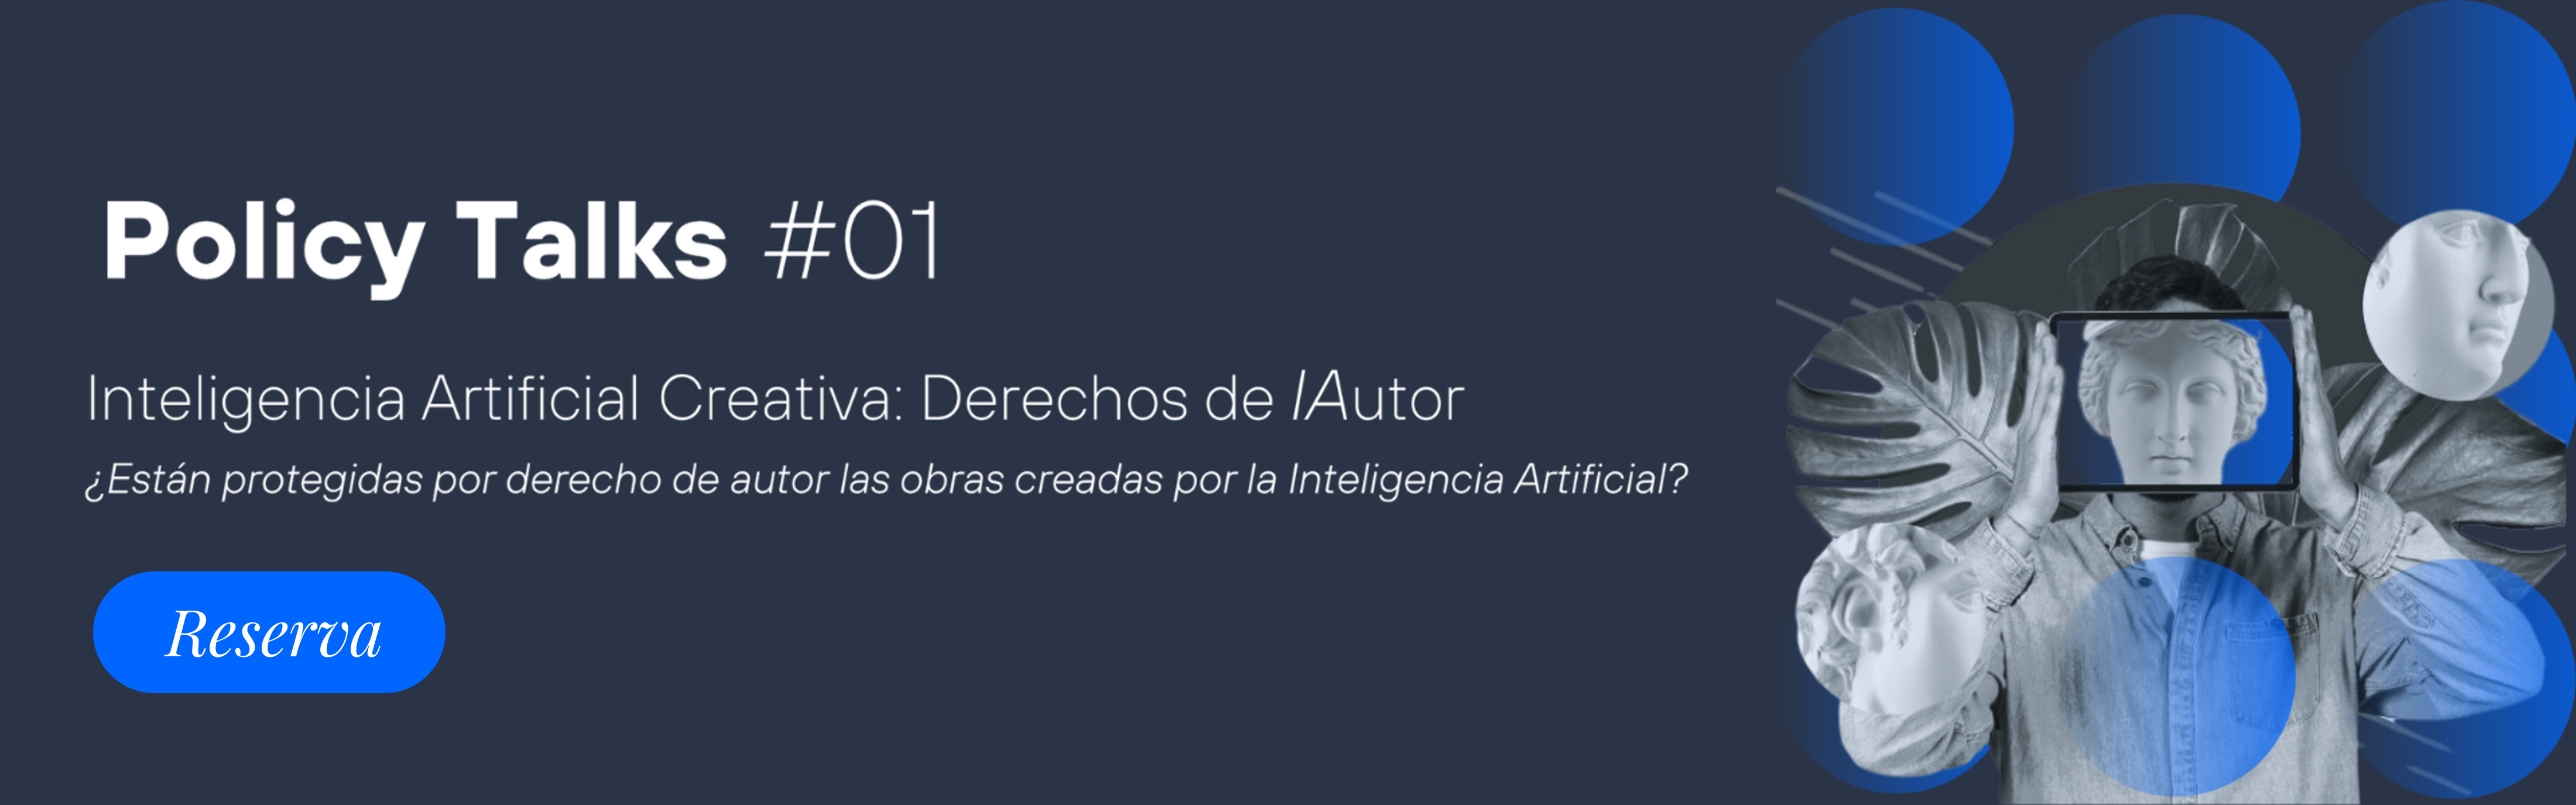 Inteligencia Artificial Creativa: Derechos de Autor